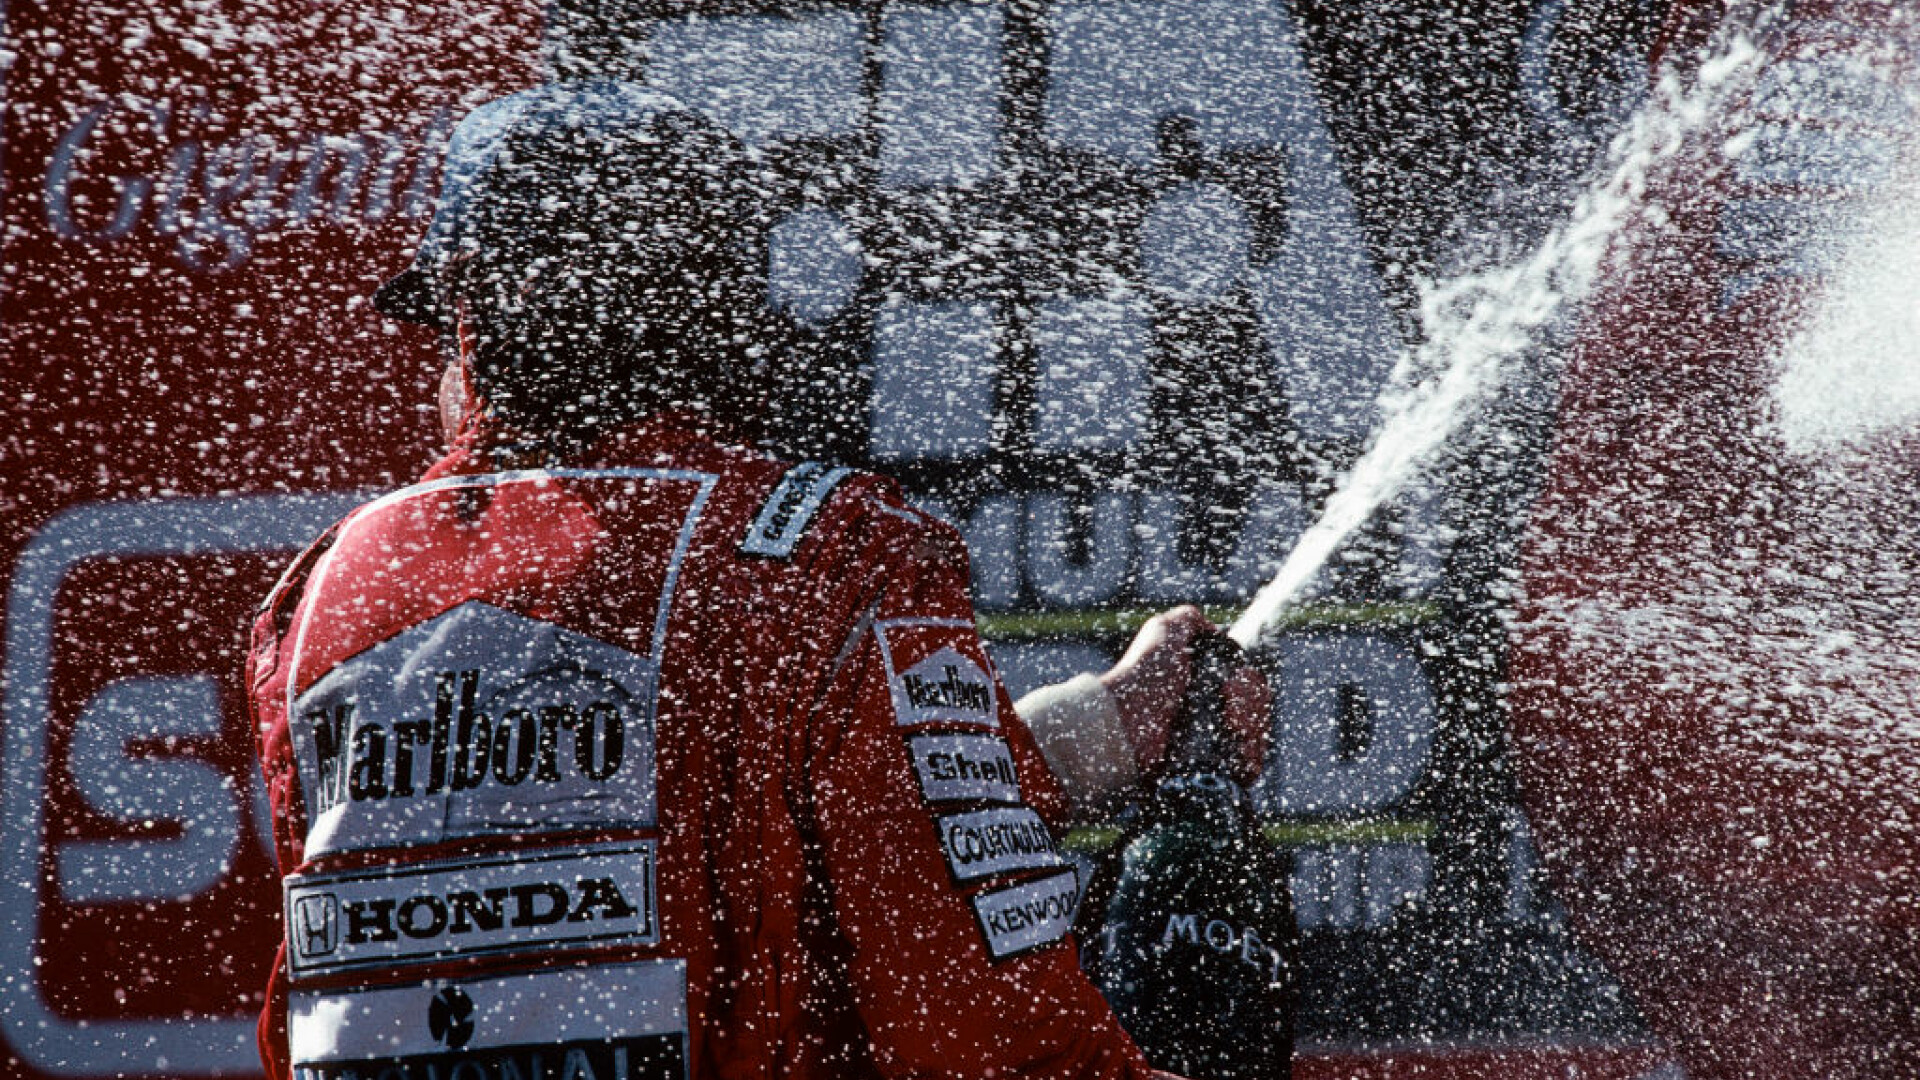 Piloţii de Formula 1 nu vor mai sărbători cu şampanie pe podium, punând capăt unei tradiții de 50 de ani. Care este motivul